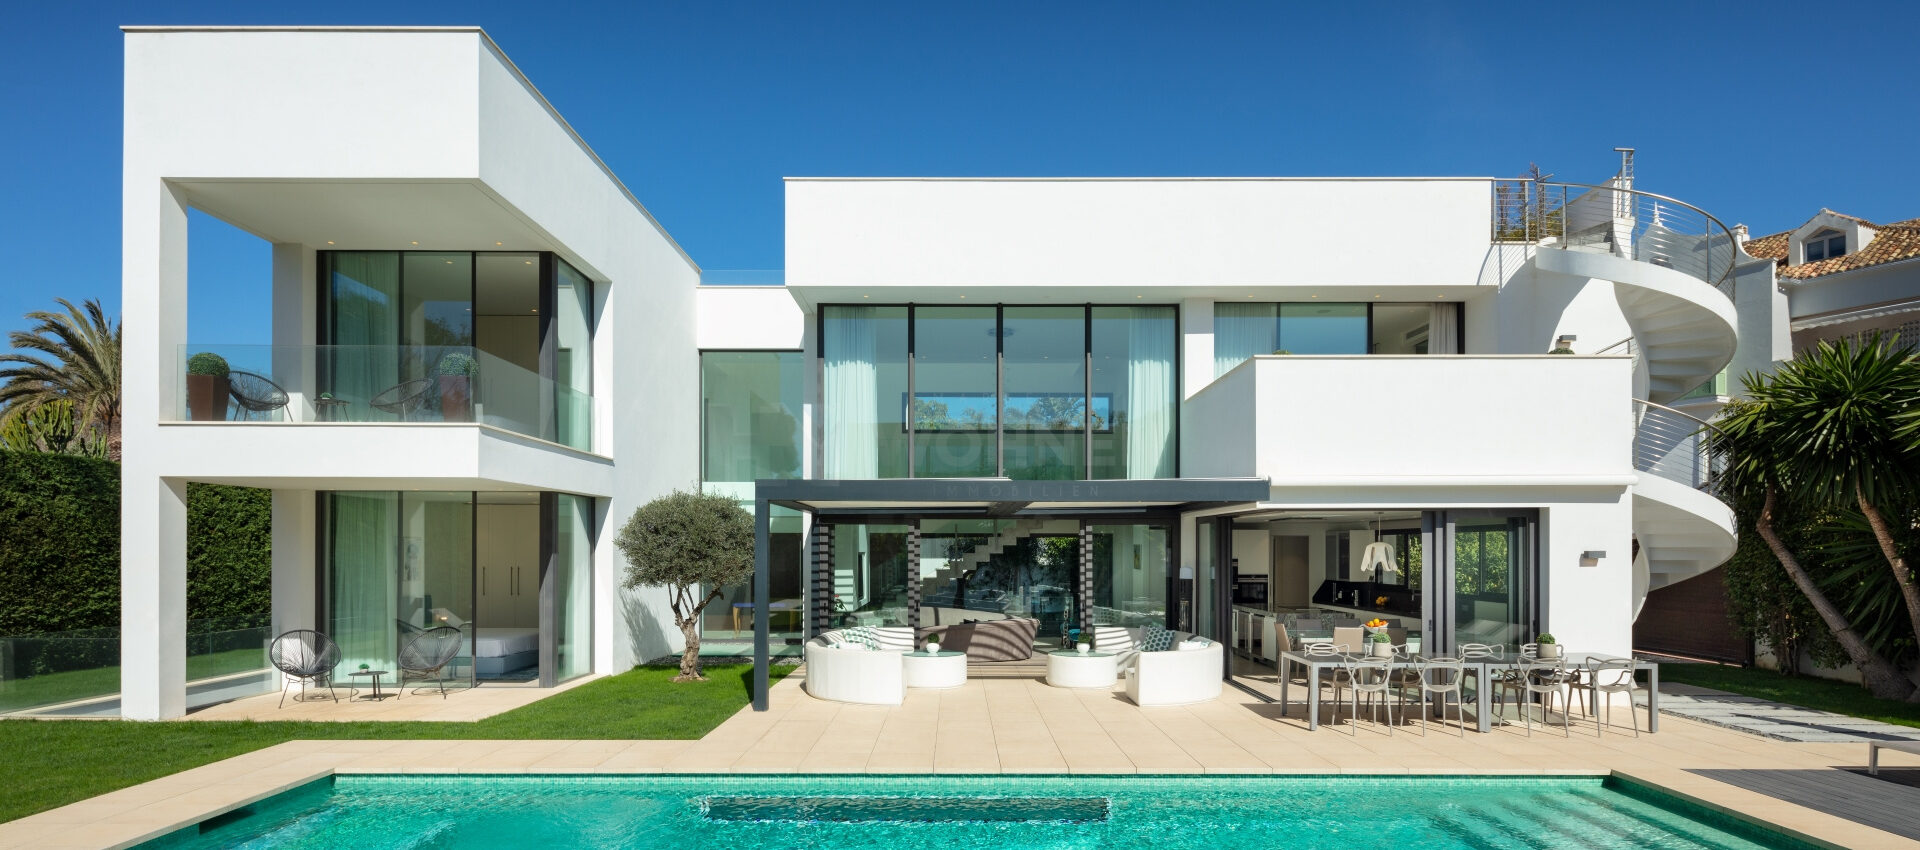 Villa contemporánea junto a la playa de Puerto Banús Marbella